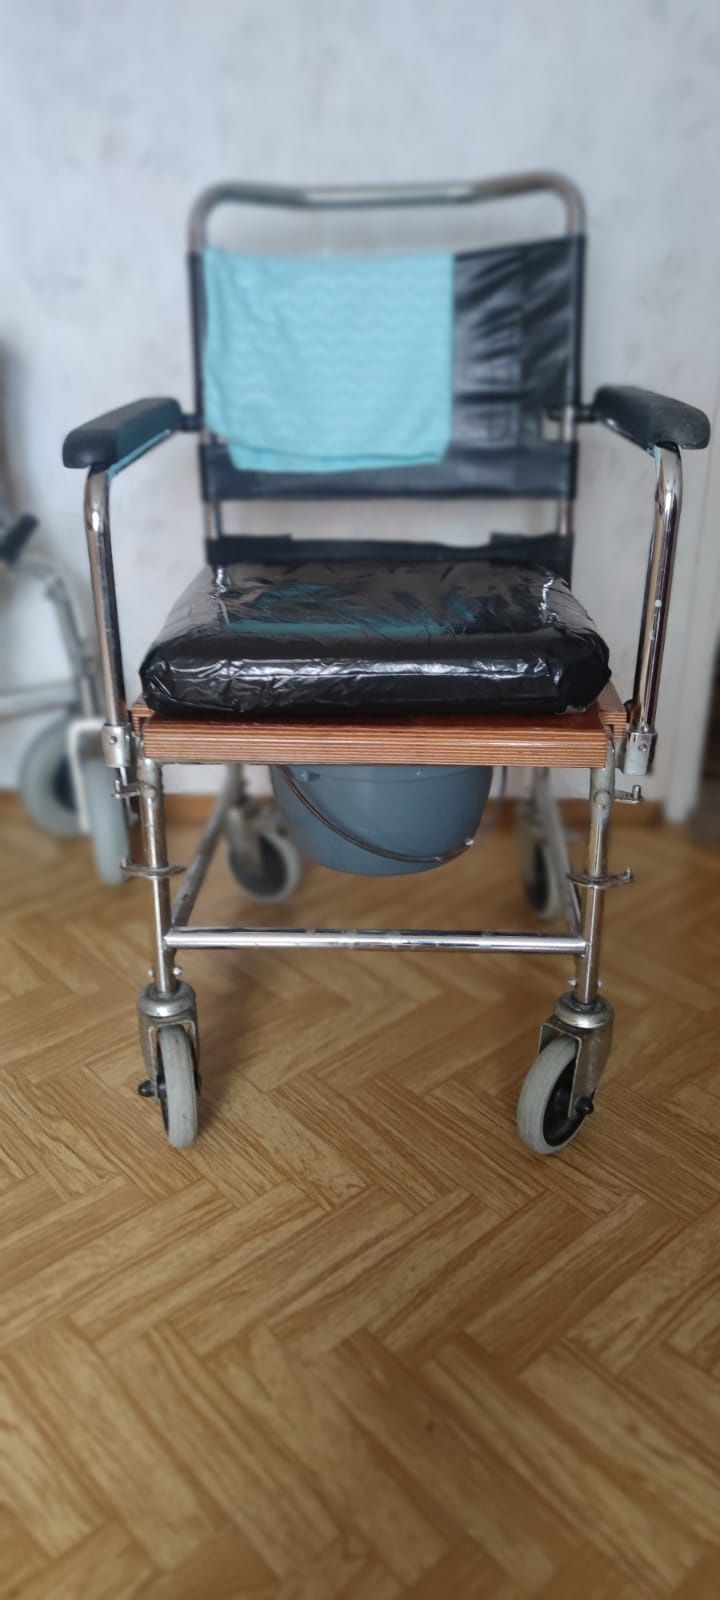 Krzesło toaletowe (jako wózek inwalidzki) na kółkach